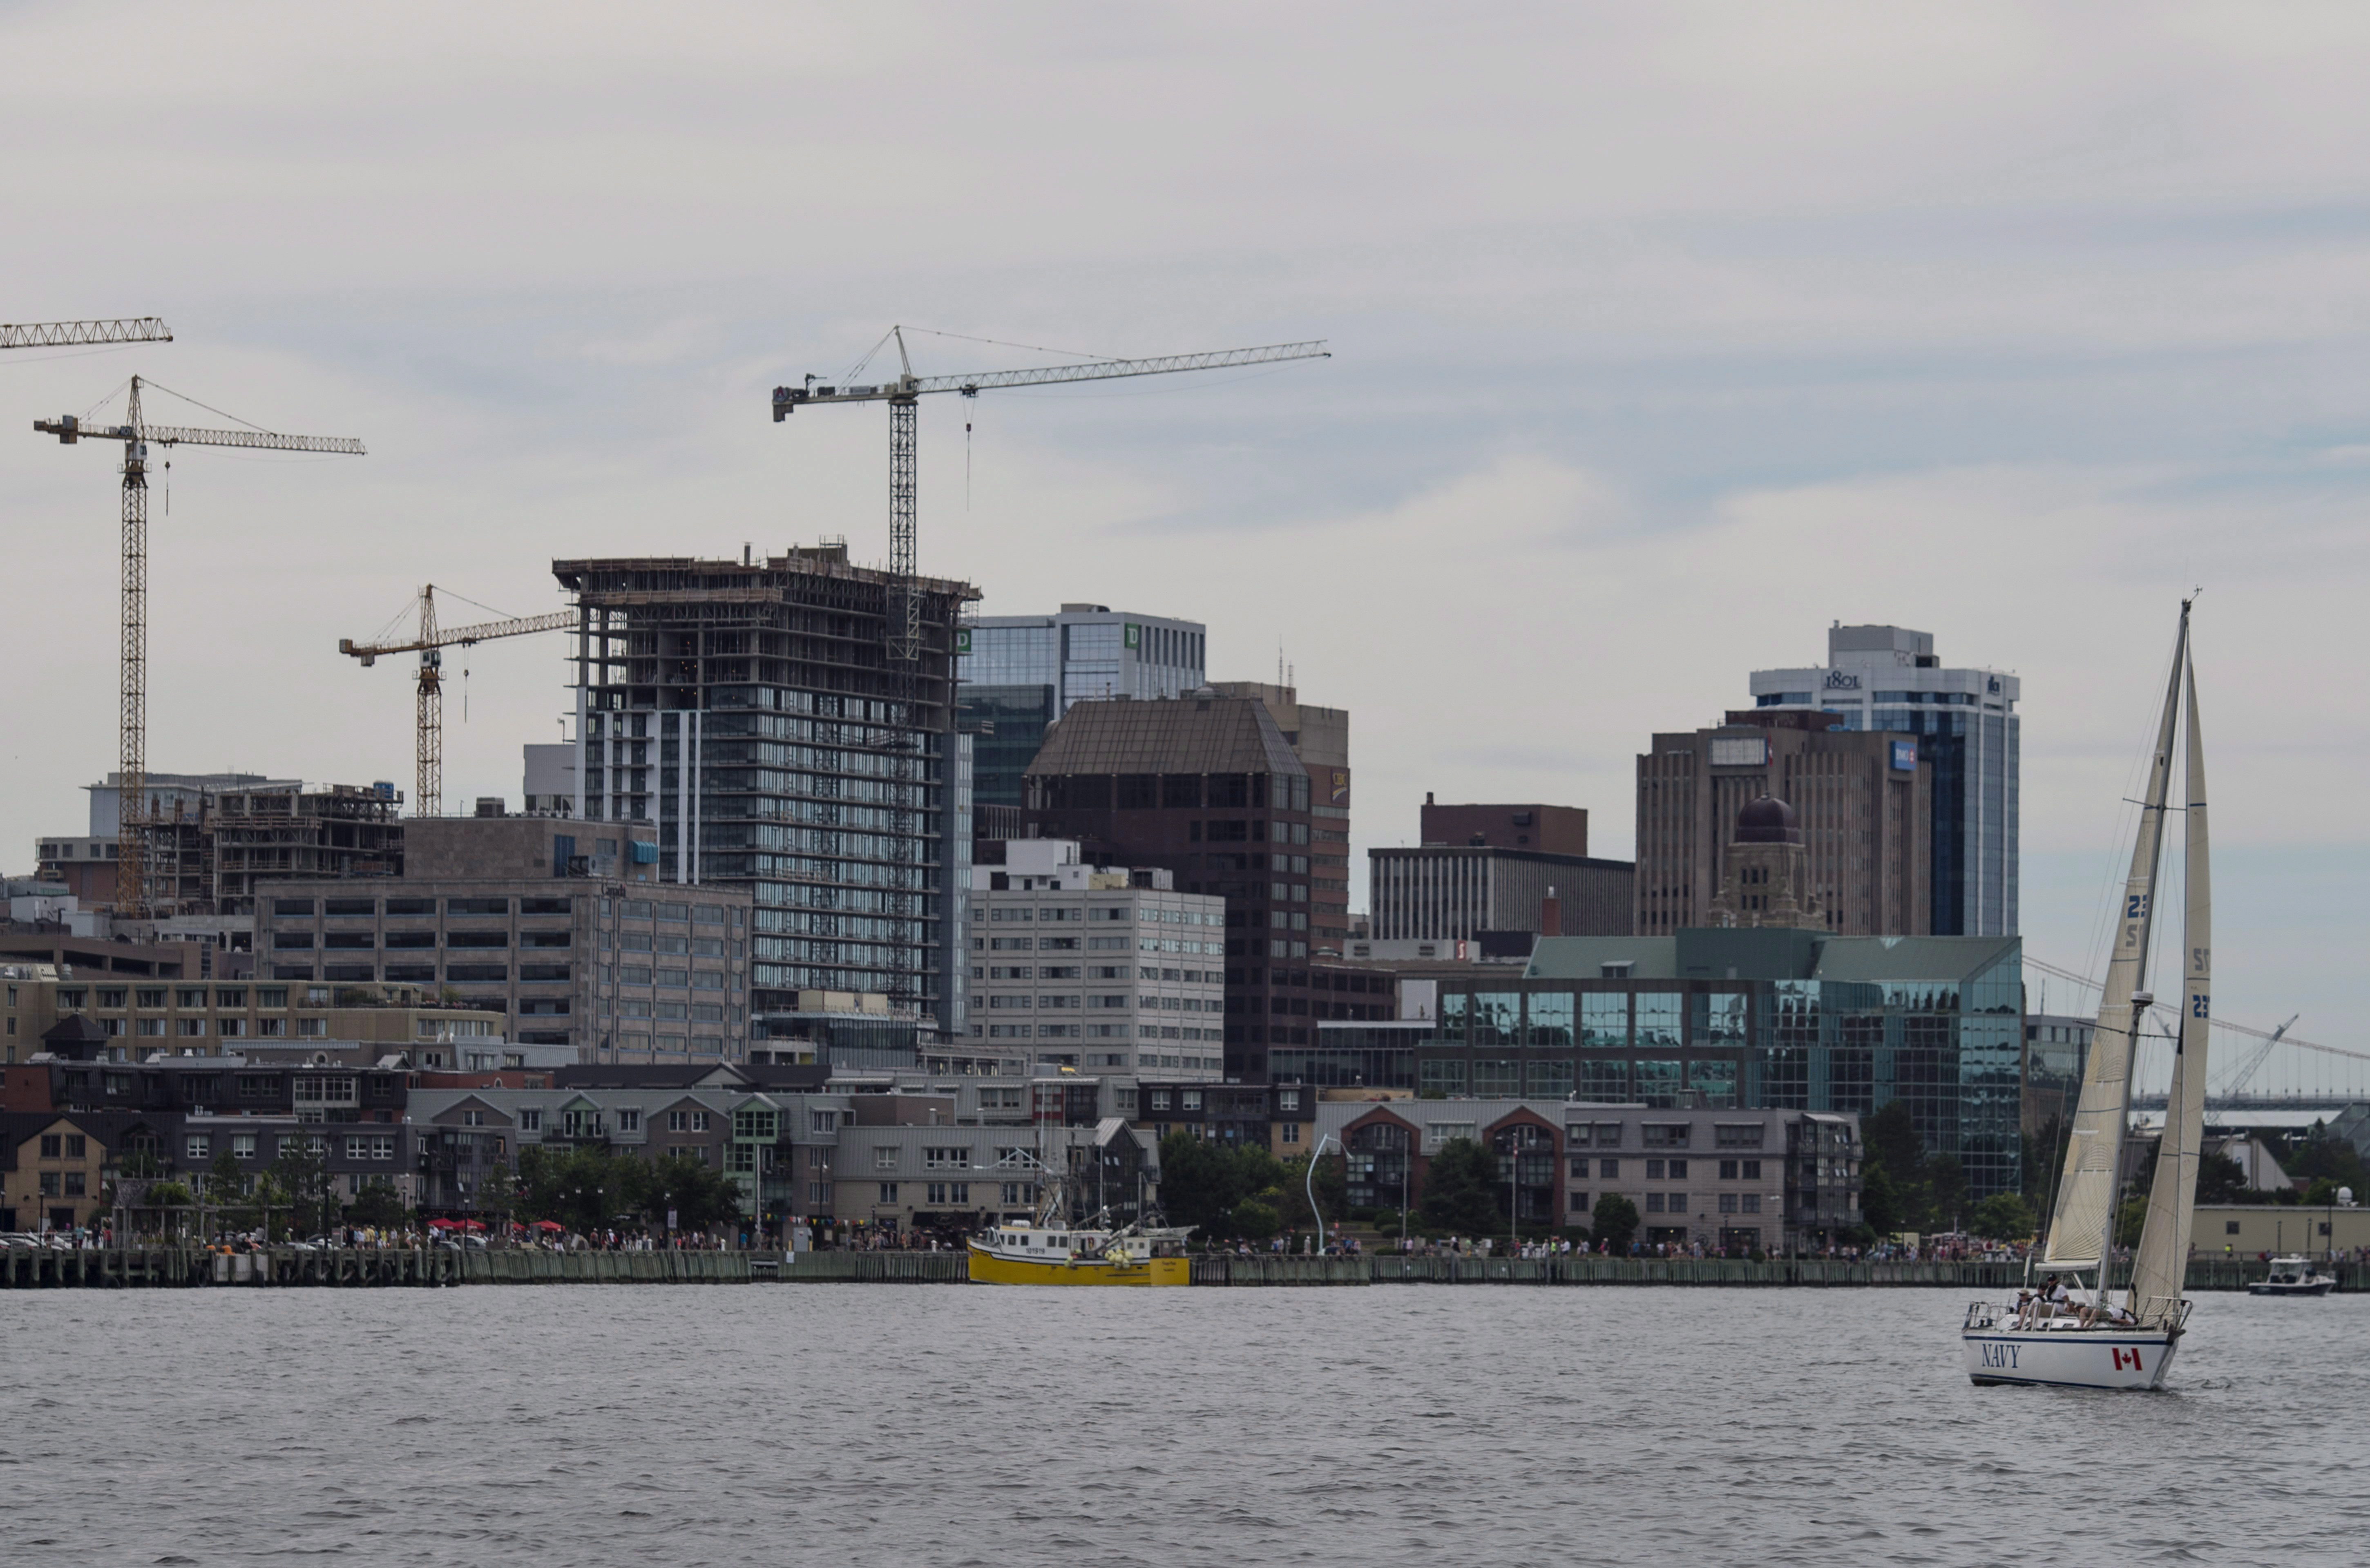 Un velero se ve frente al horizonte de Halifax el domingo 31 de julio de 2016. THE CANADIAN PRESS / Darren Calabrese